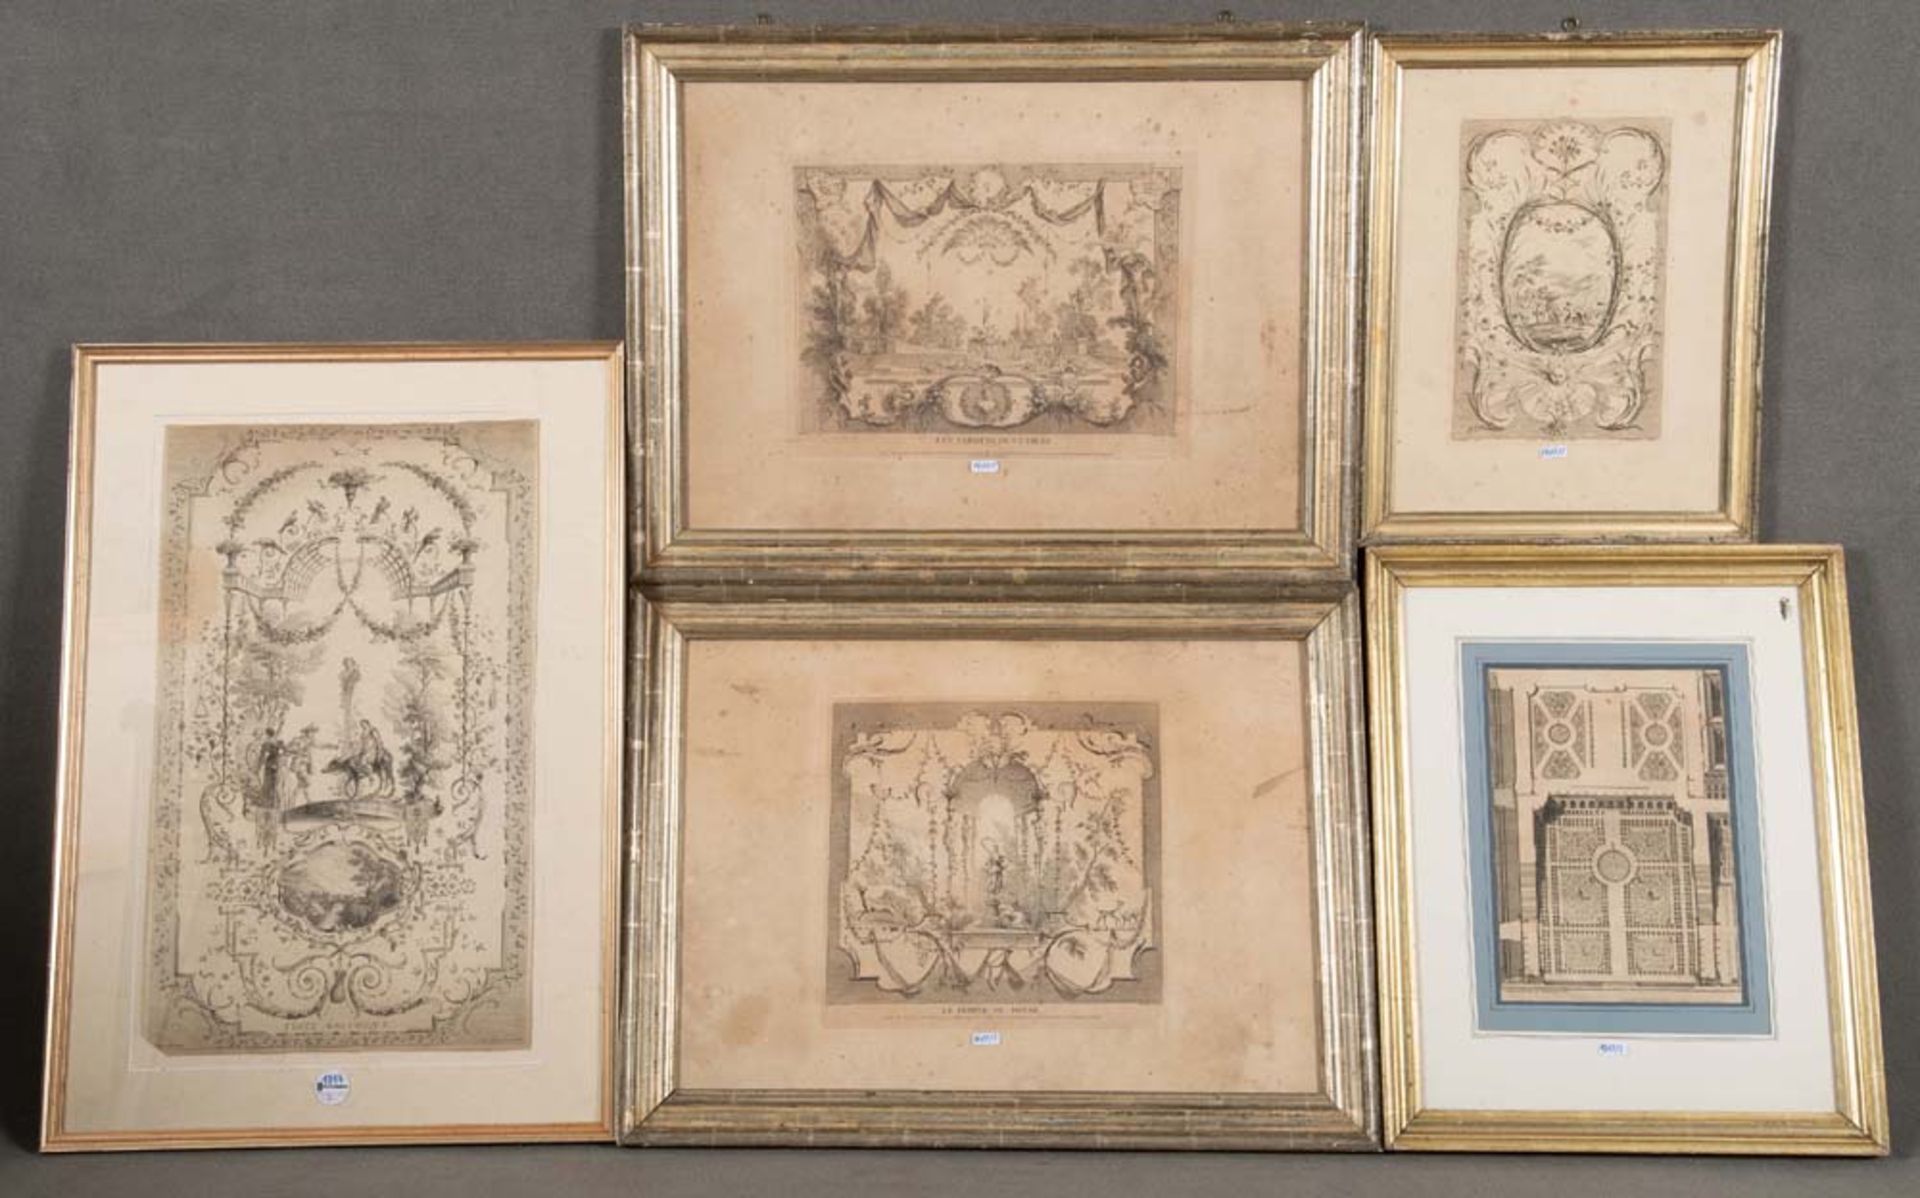 Jean Antoine Watteau (1684-1721). Vier Motivvorlagen, teilw. mit mythologischen Szenen; dazu